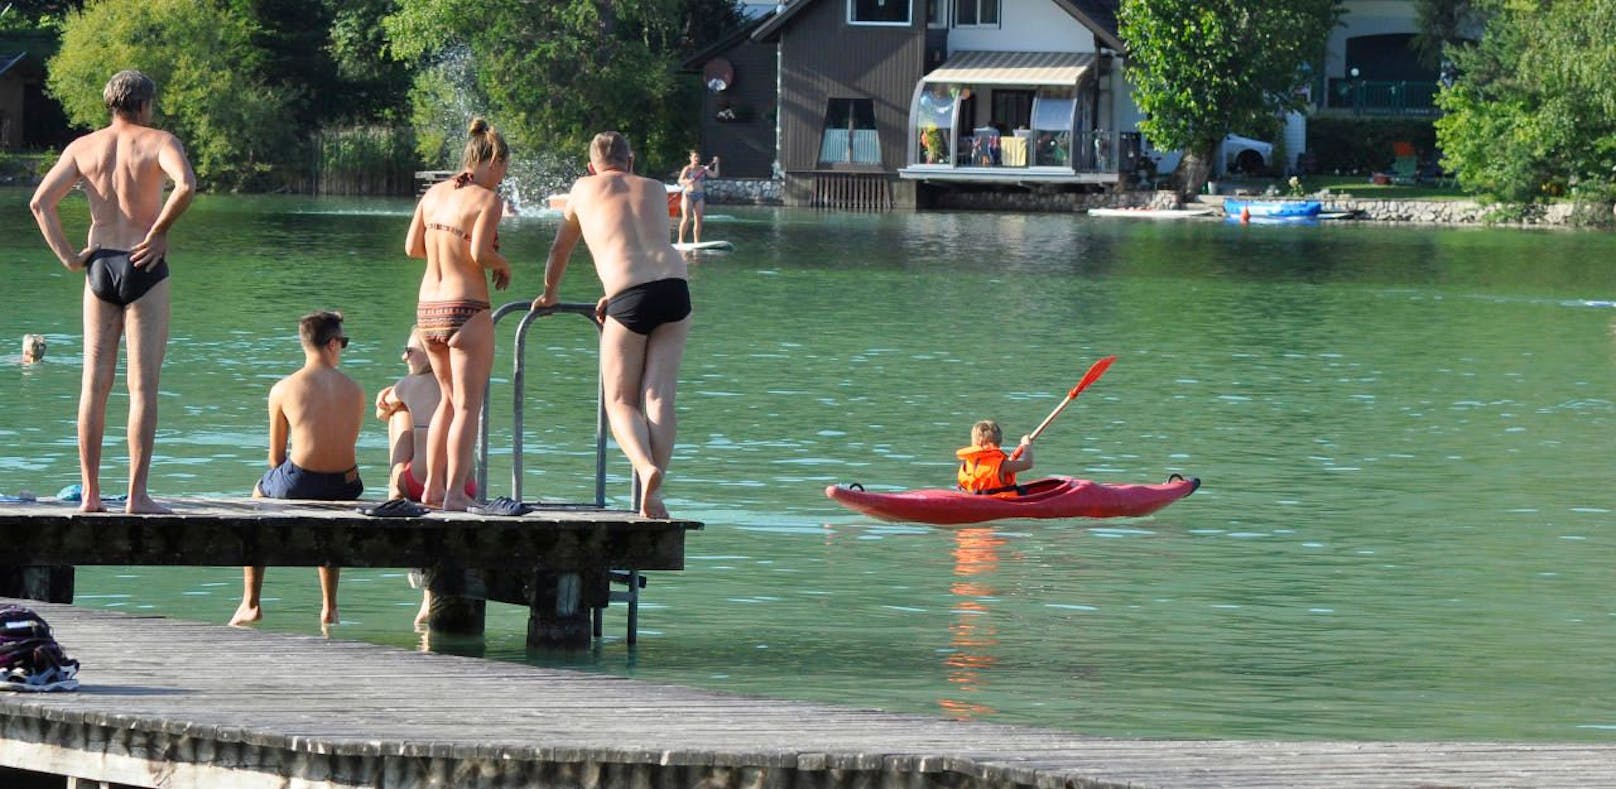 Badesteg am Naturbadestrand - hier am Erlaufsee. Die Strandbäder und Schwimmbäder sollen im Sommer öffnen.